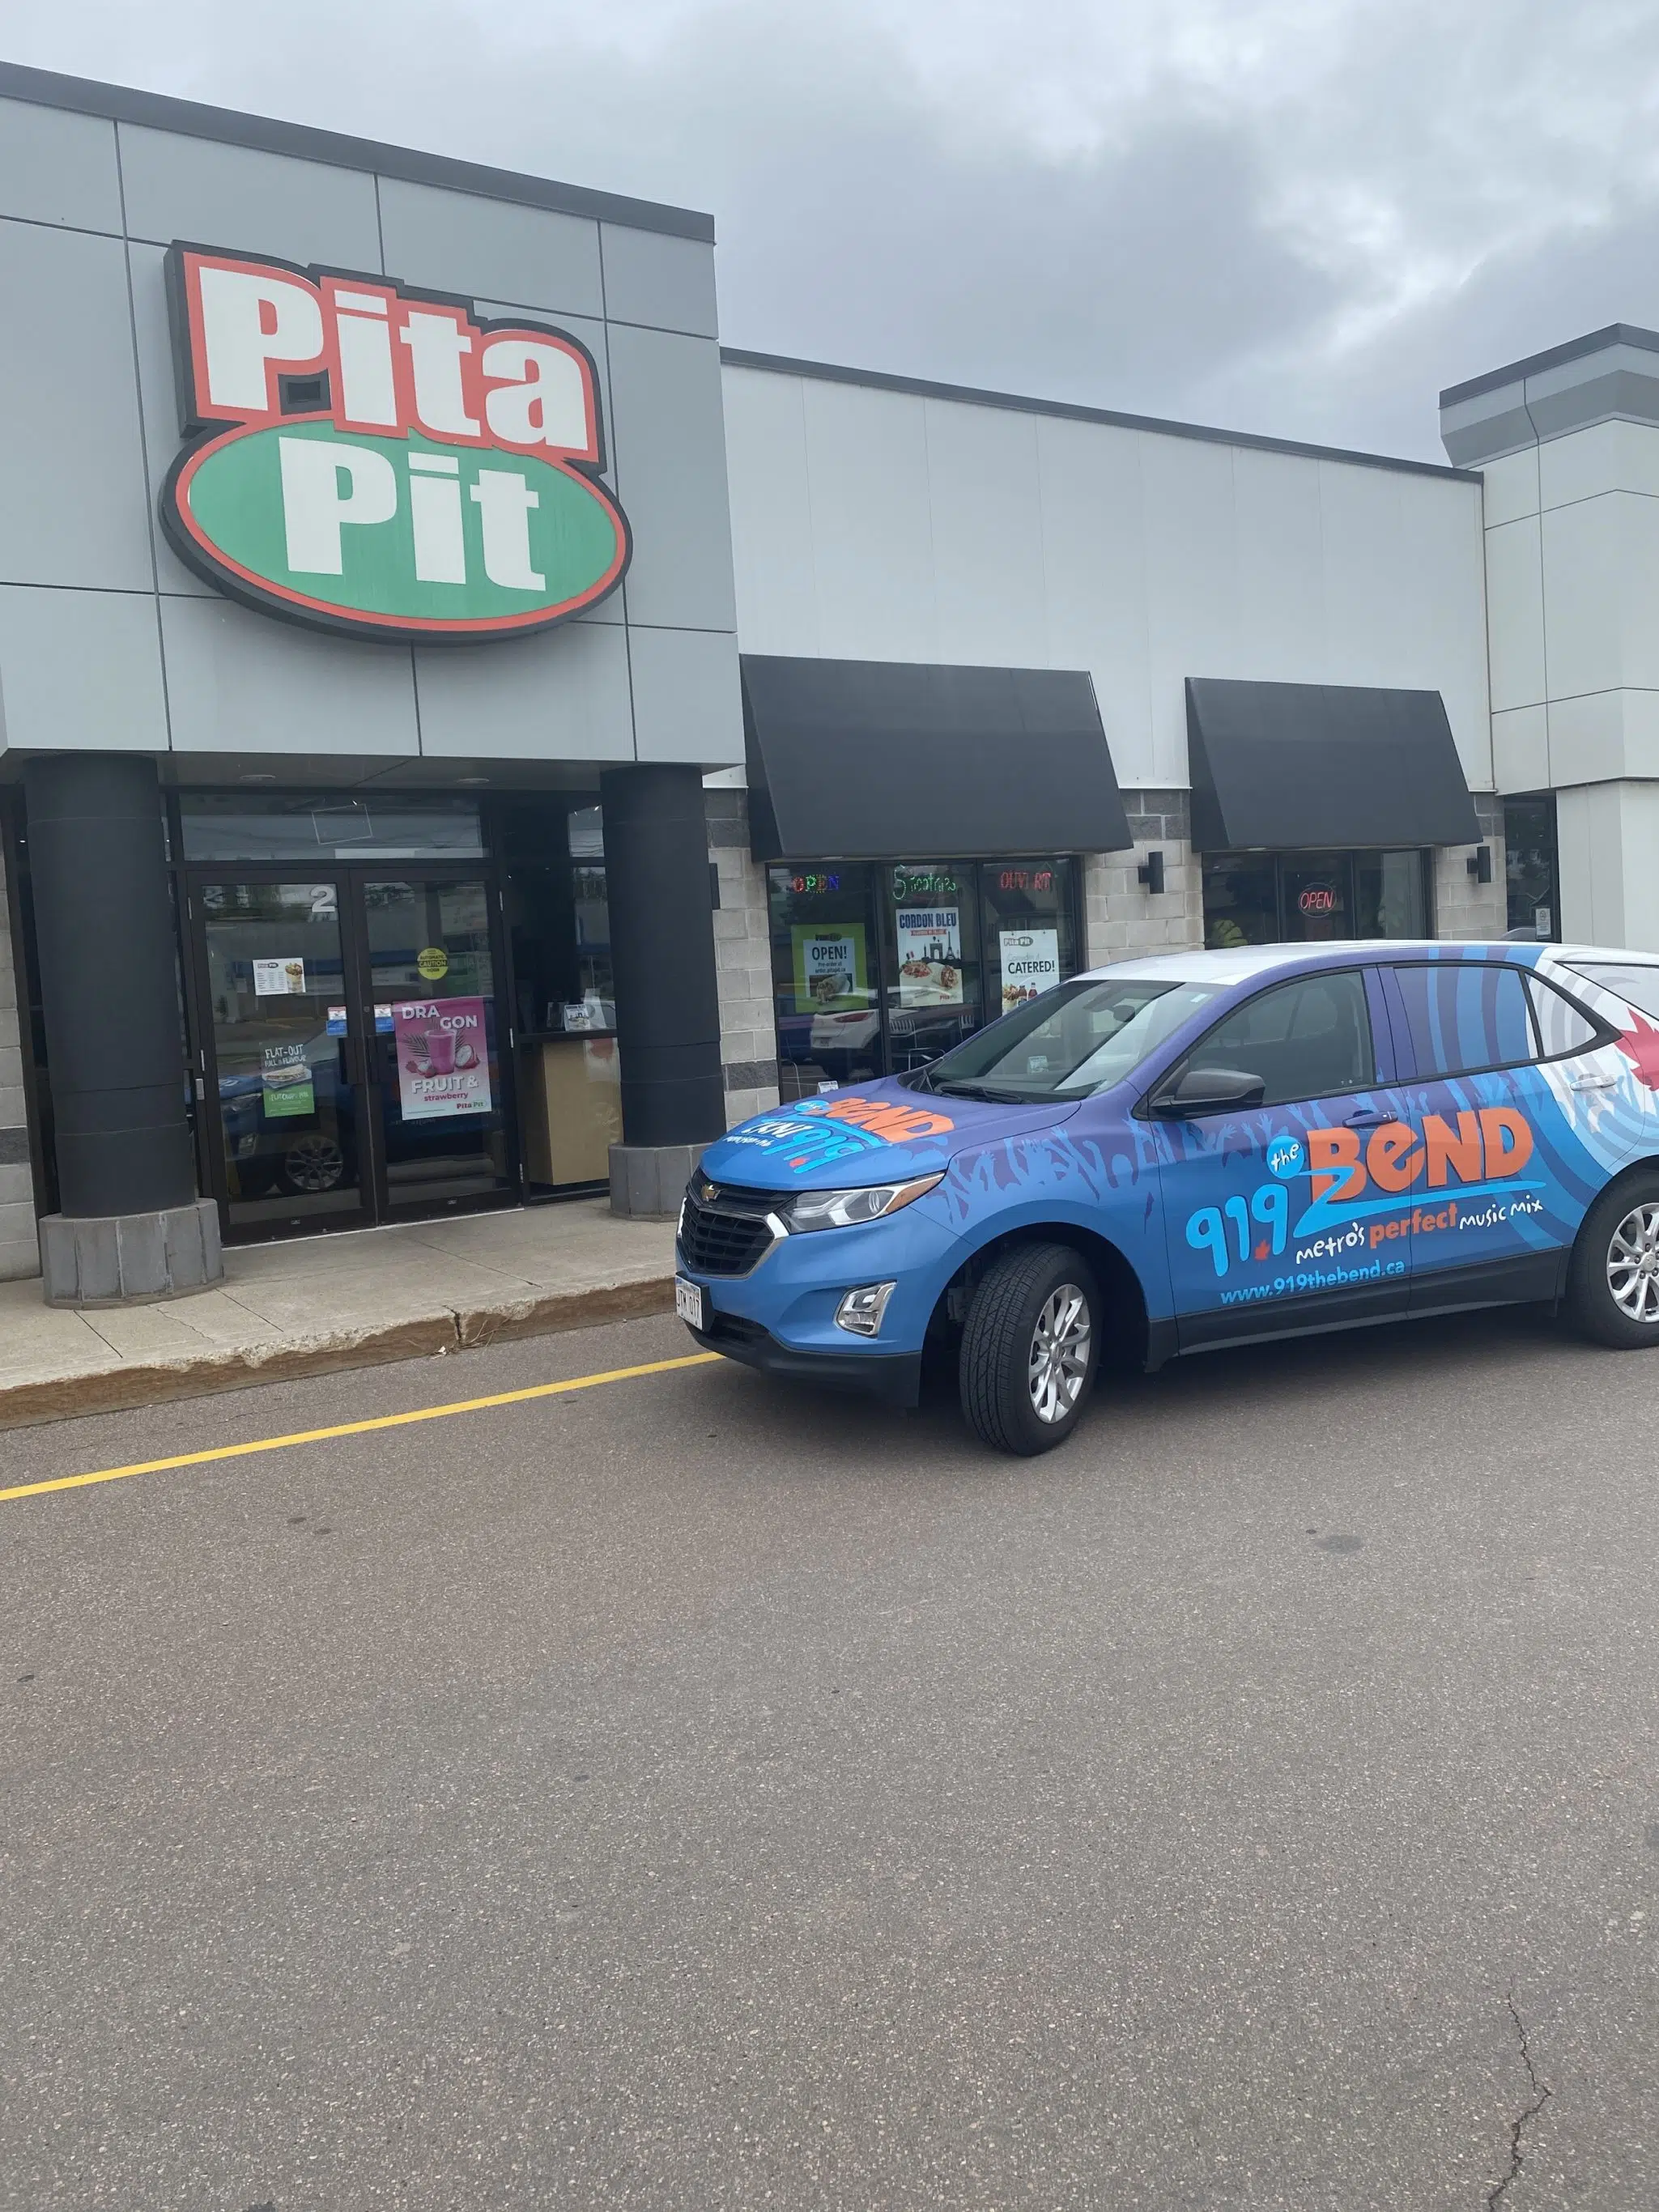 Pita pit Metro eats text pita pit and WIN